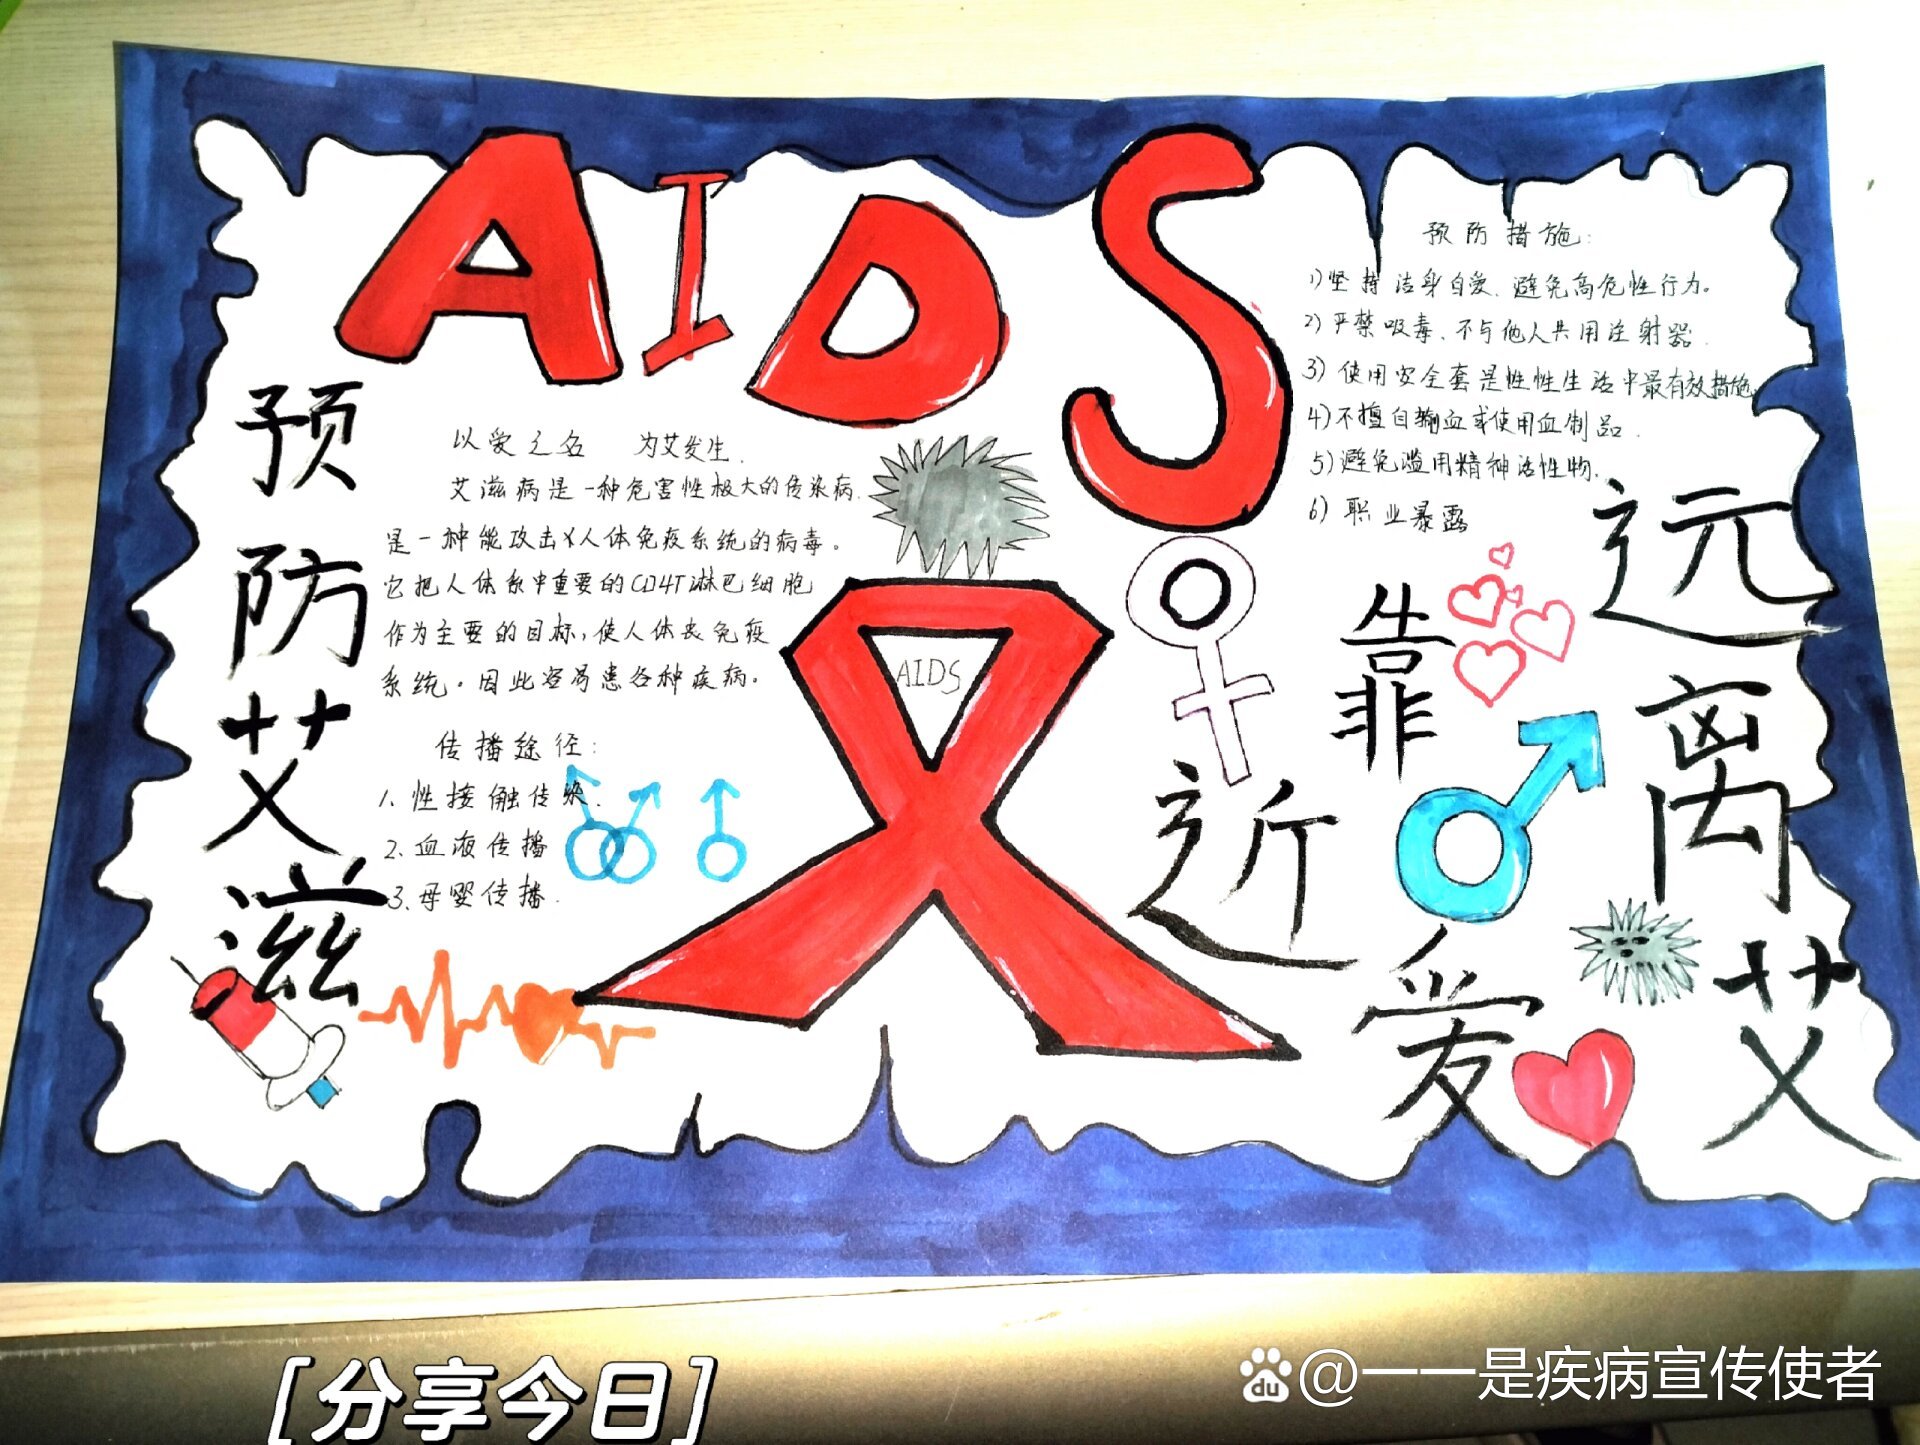 艾滋病手抄报,预防艾滋病,靠近爱远离艾